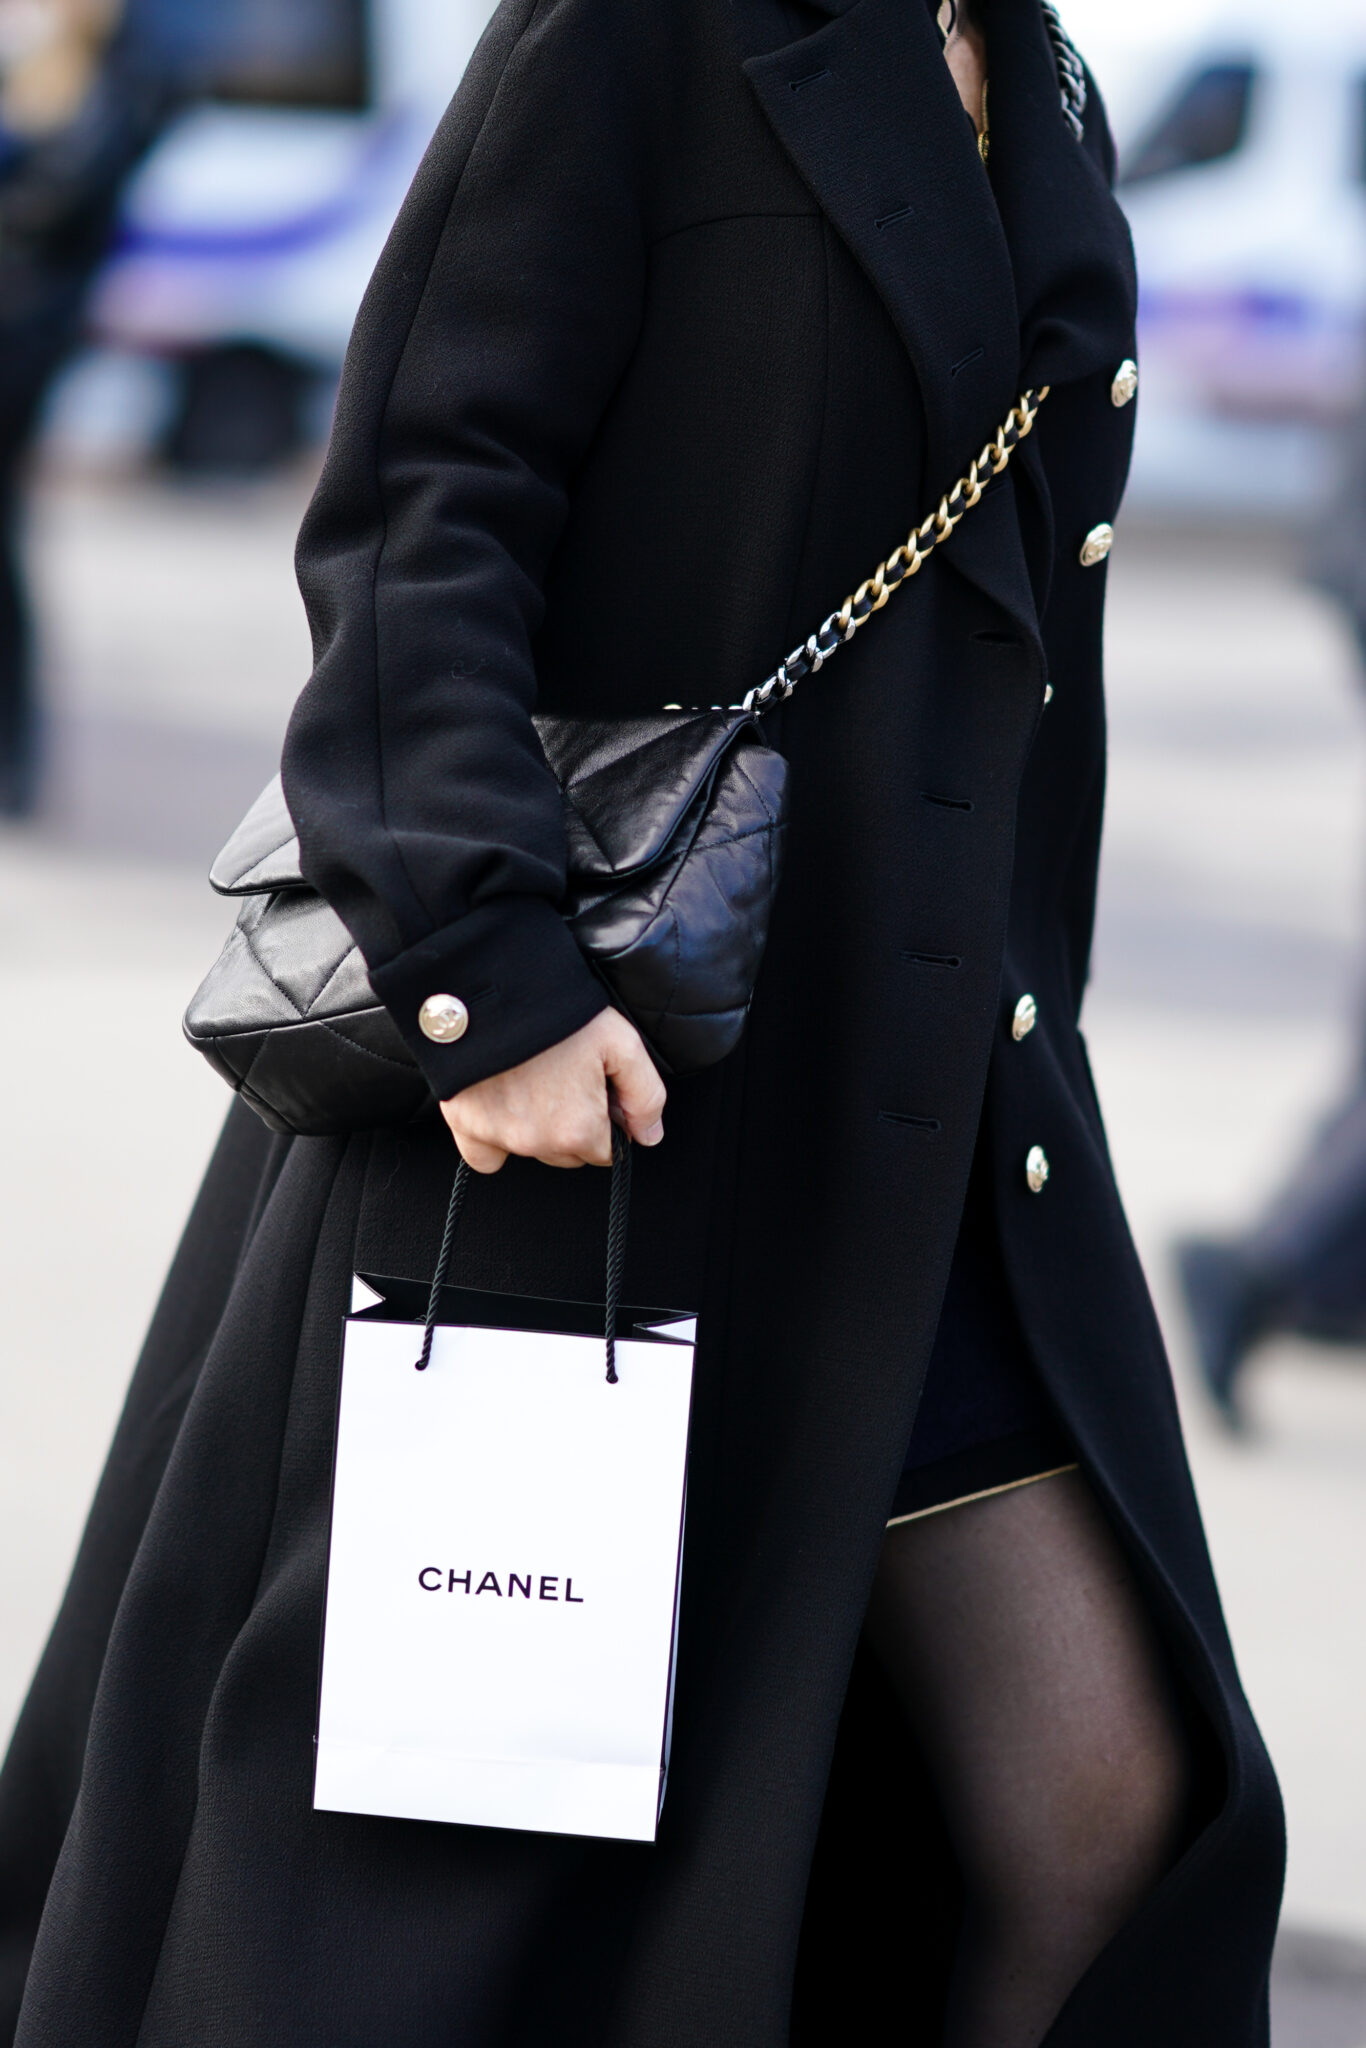 Blomqvist etterspør luksusmerker som Chanel